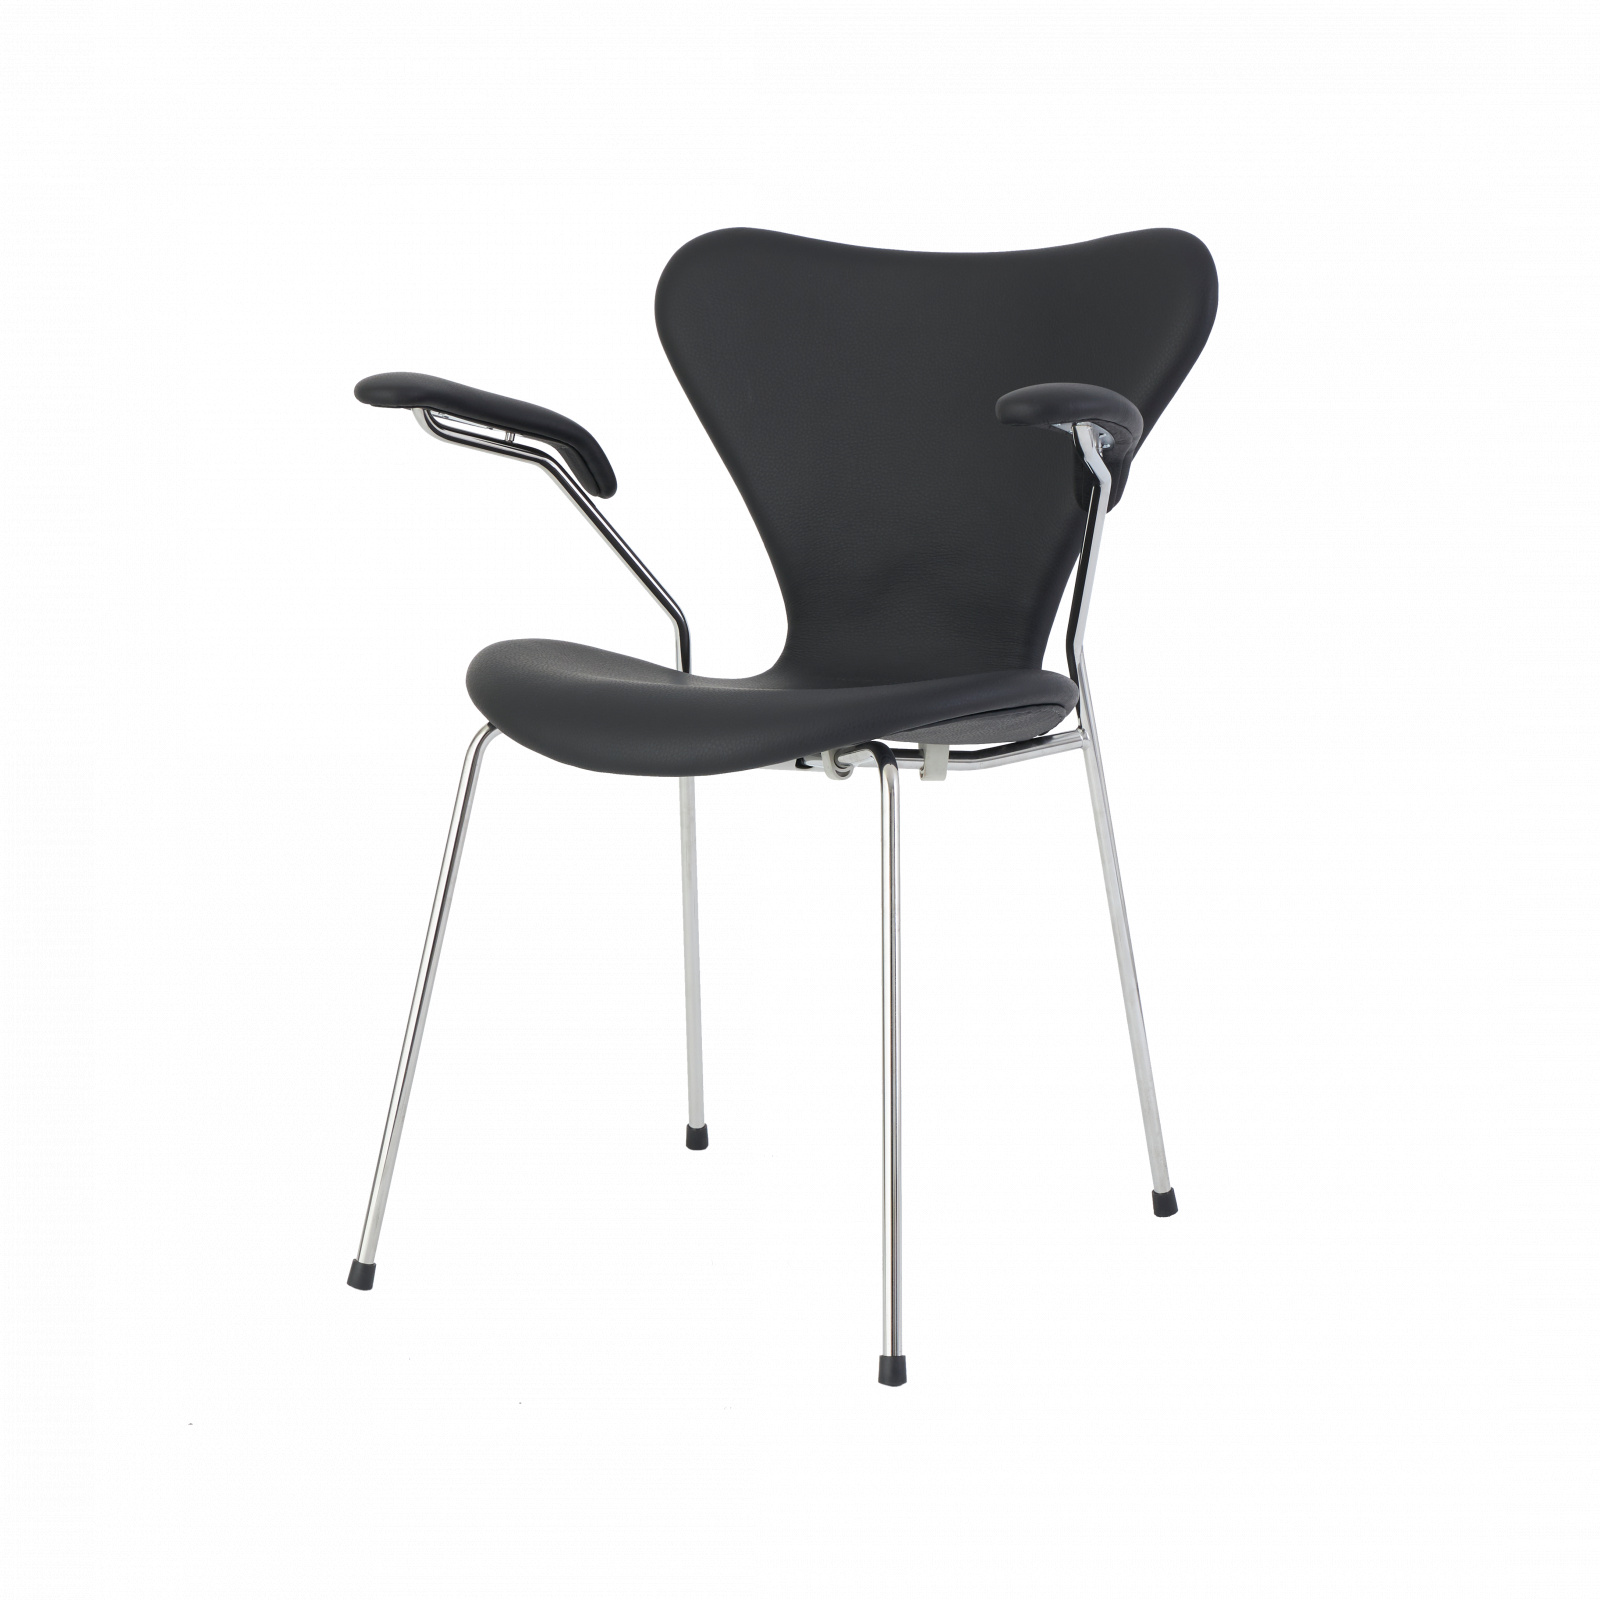 7er stol med armlæn - Arne Jacobsen – UpNordic